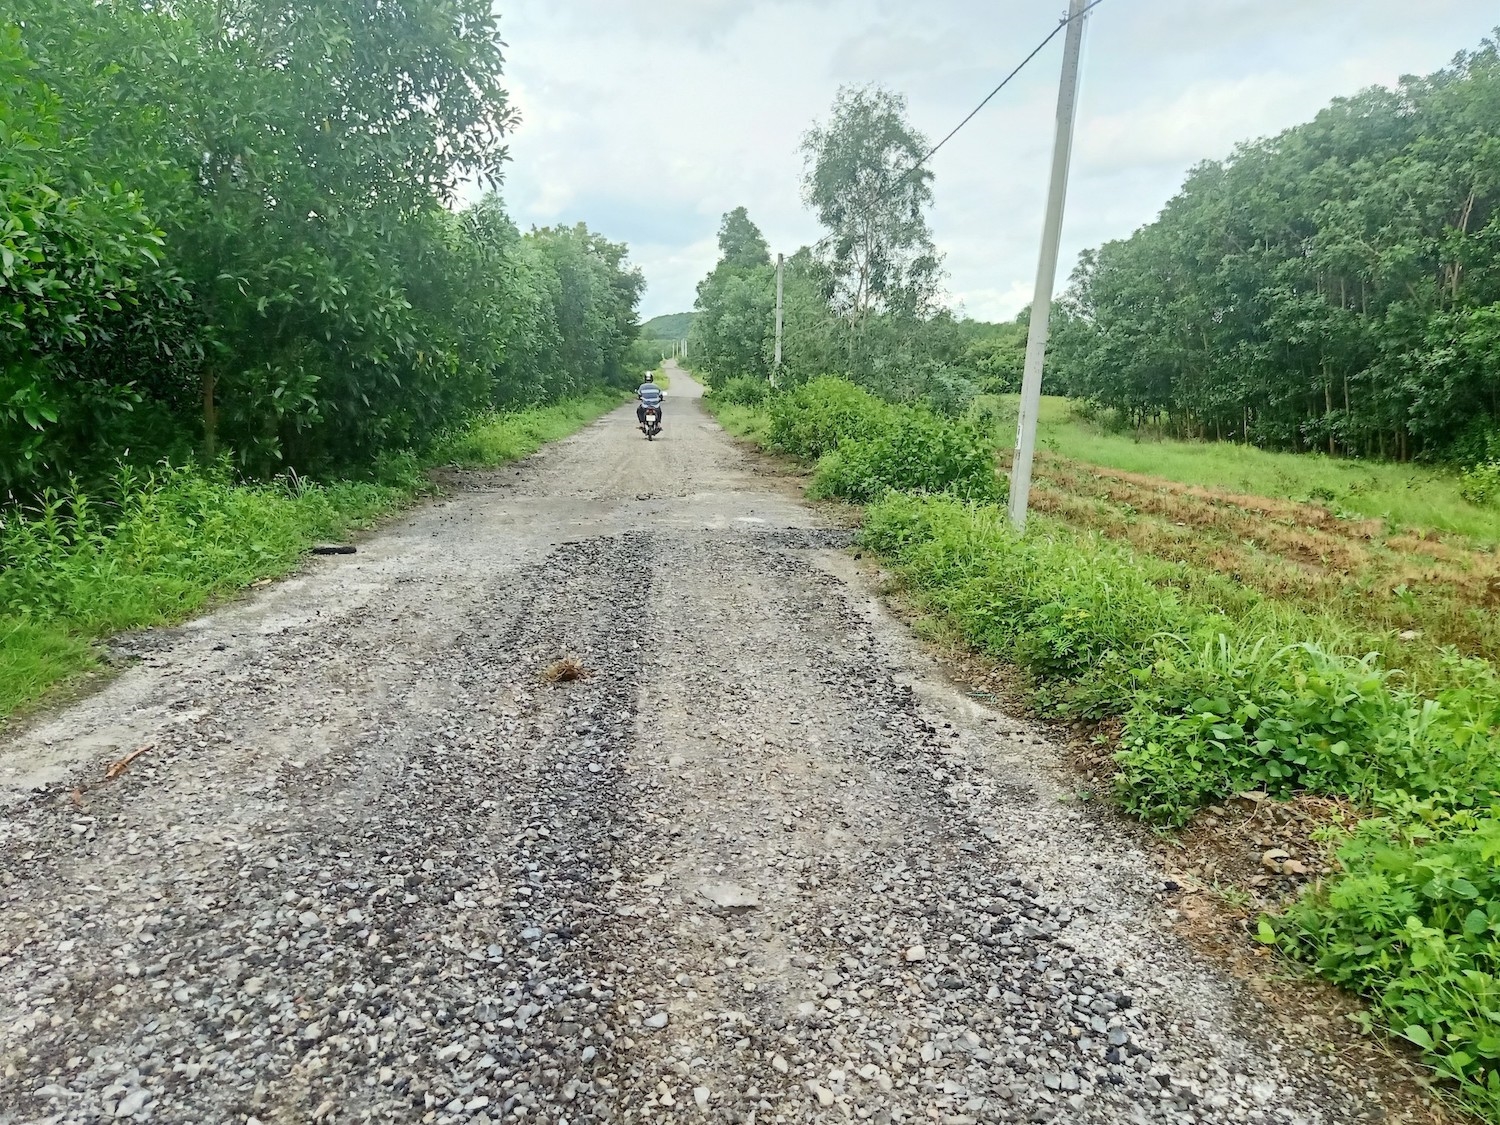  Thực trạng một trong nhiều đoạn đang hư hỏng của con đường giao thông nông thôn vừa được đưa vào sử dụng thuộc địa phận cánh đồng thôn 6, xã Bình Trung, huyện Châu Đức